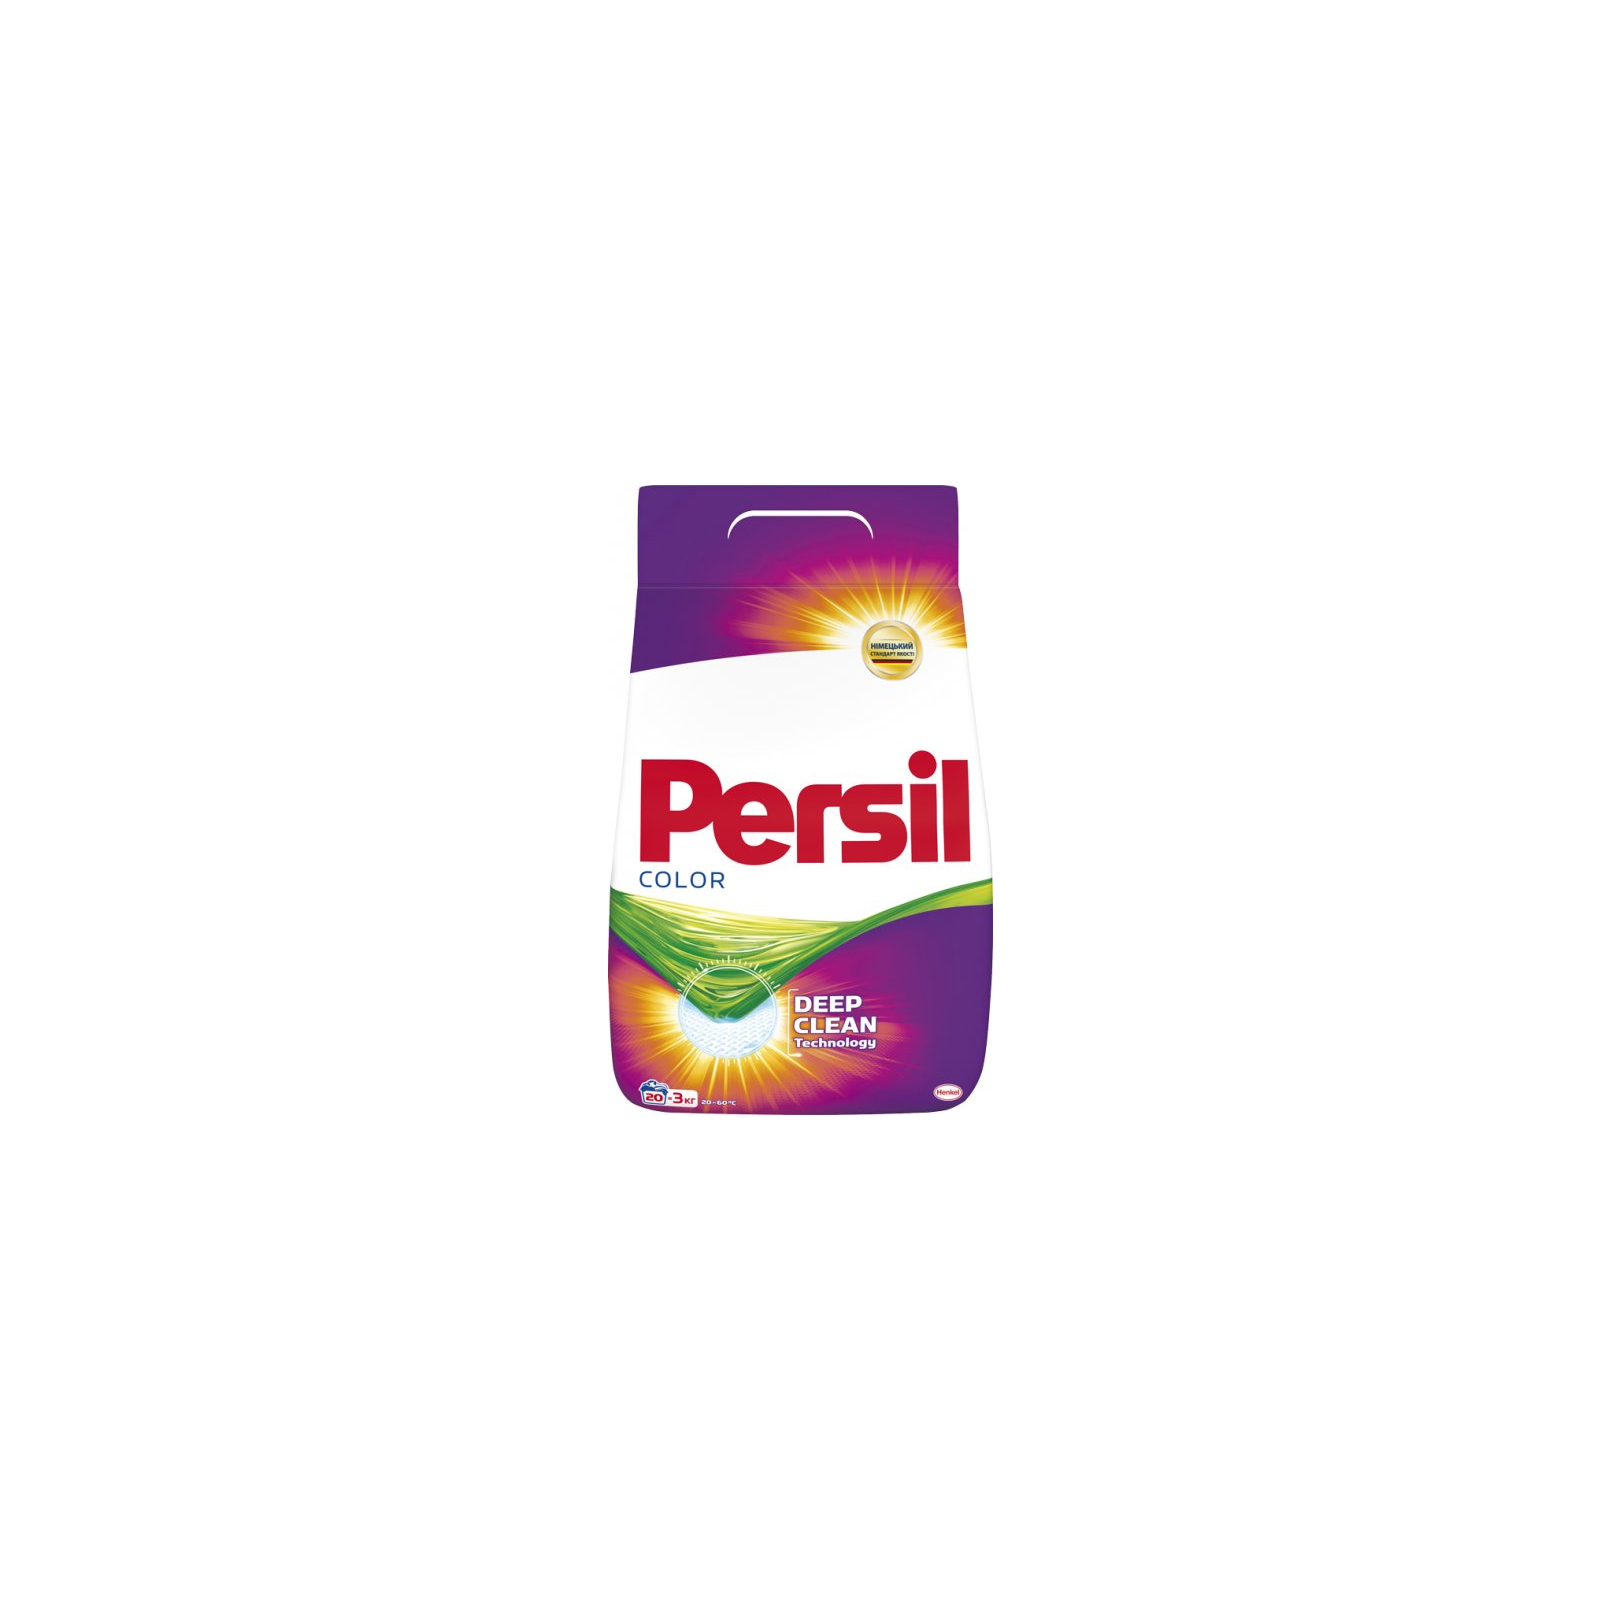 Пральний порошок Persil автомат Колор 9.45 кг (9000101428483)